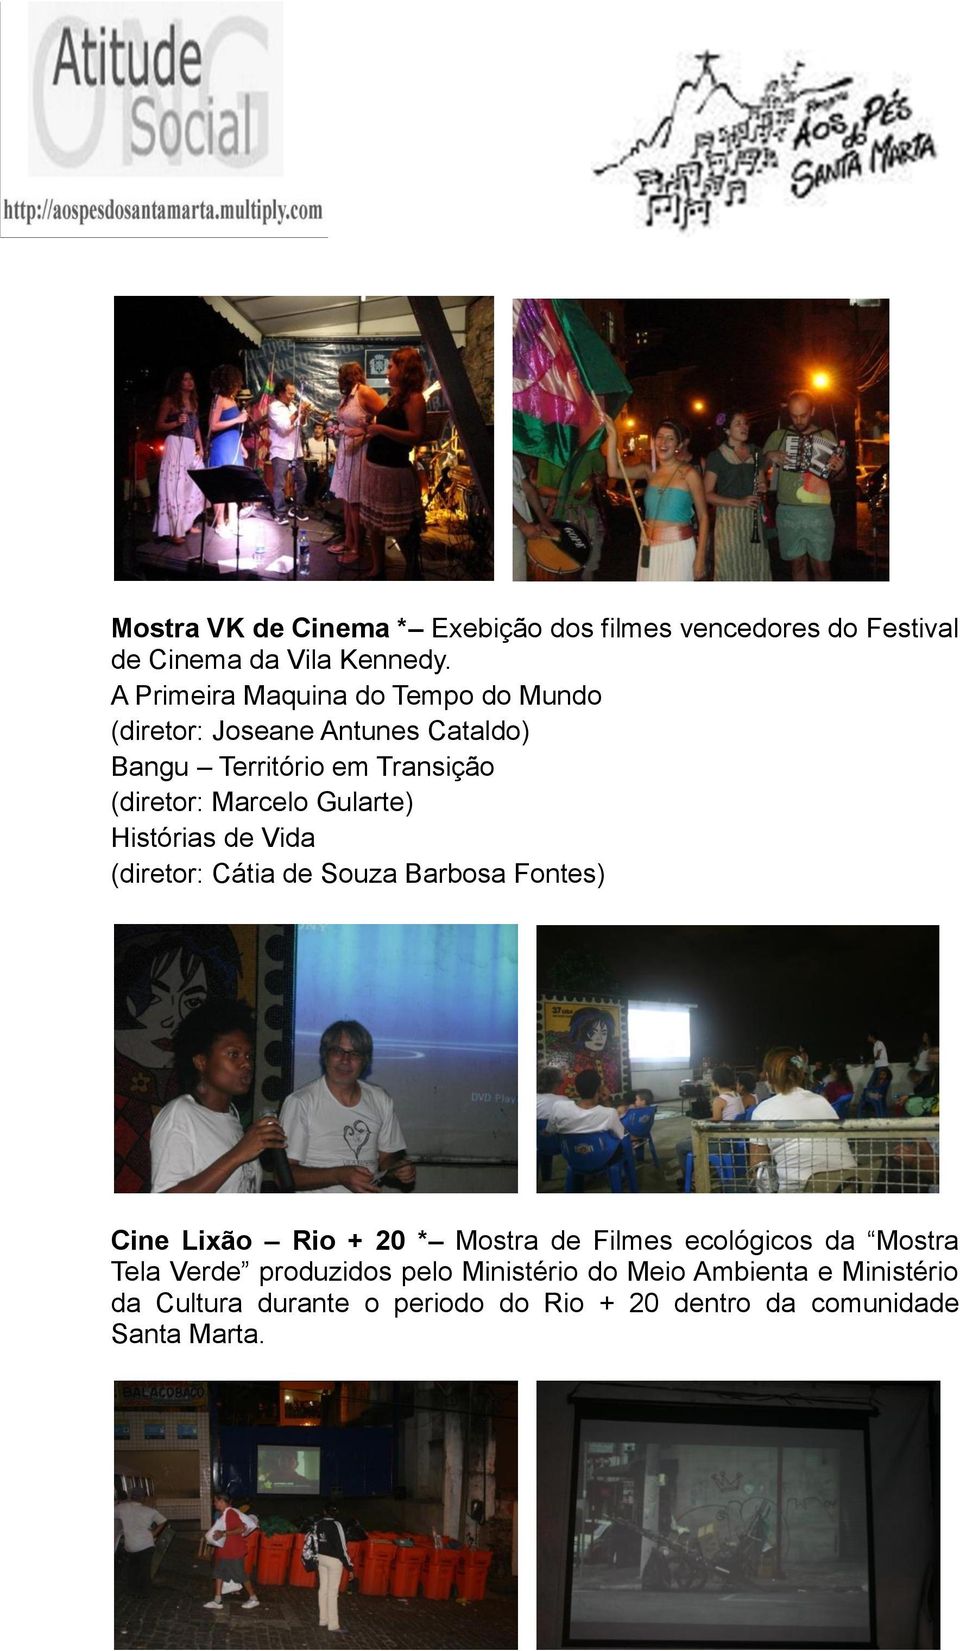 Gularte) Histórias de Vida (diretor: Cátia de Souza Barbosa Fontes) Cine Lixão Rio + 20 * Mostra de Filmes ecológicos da